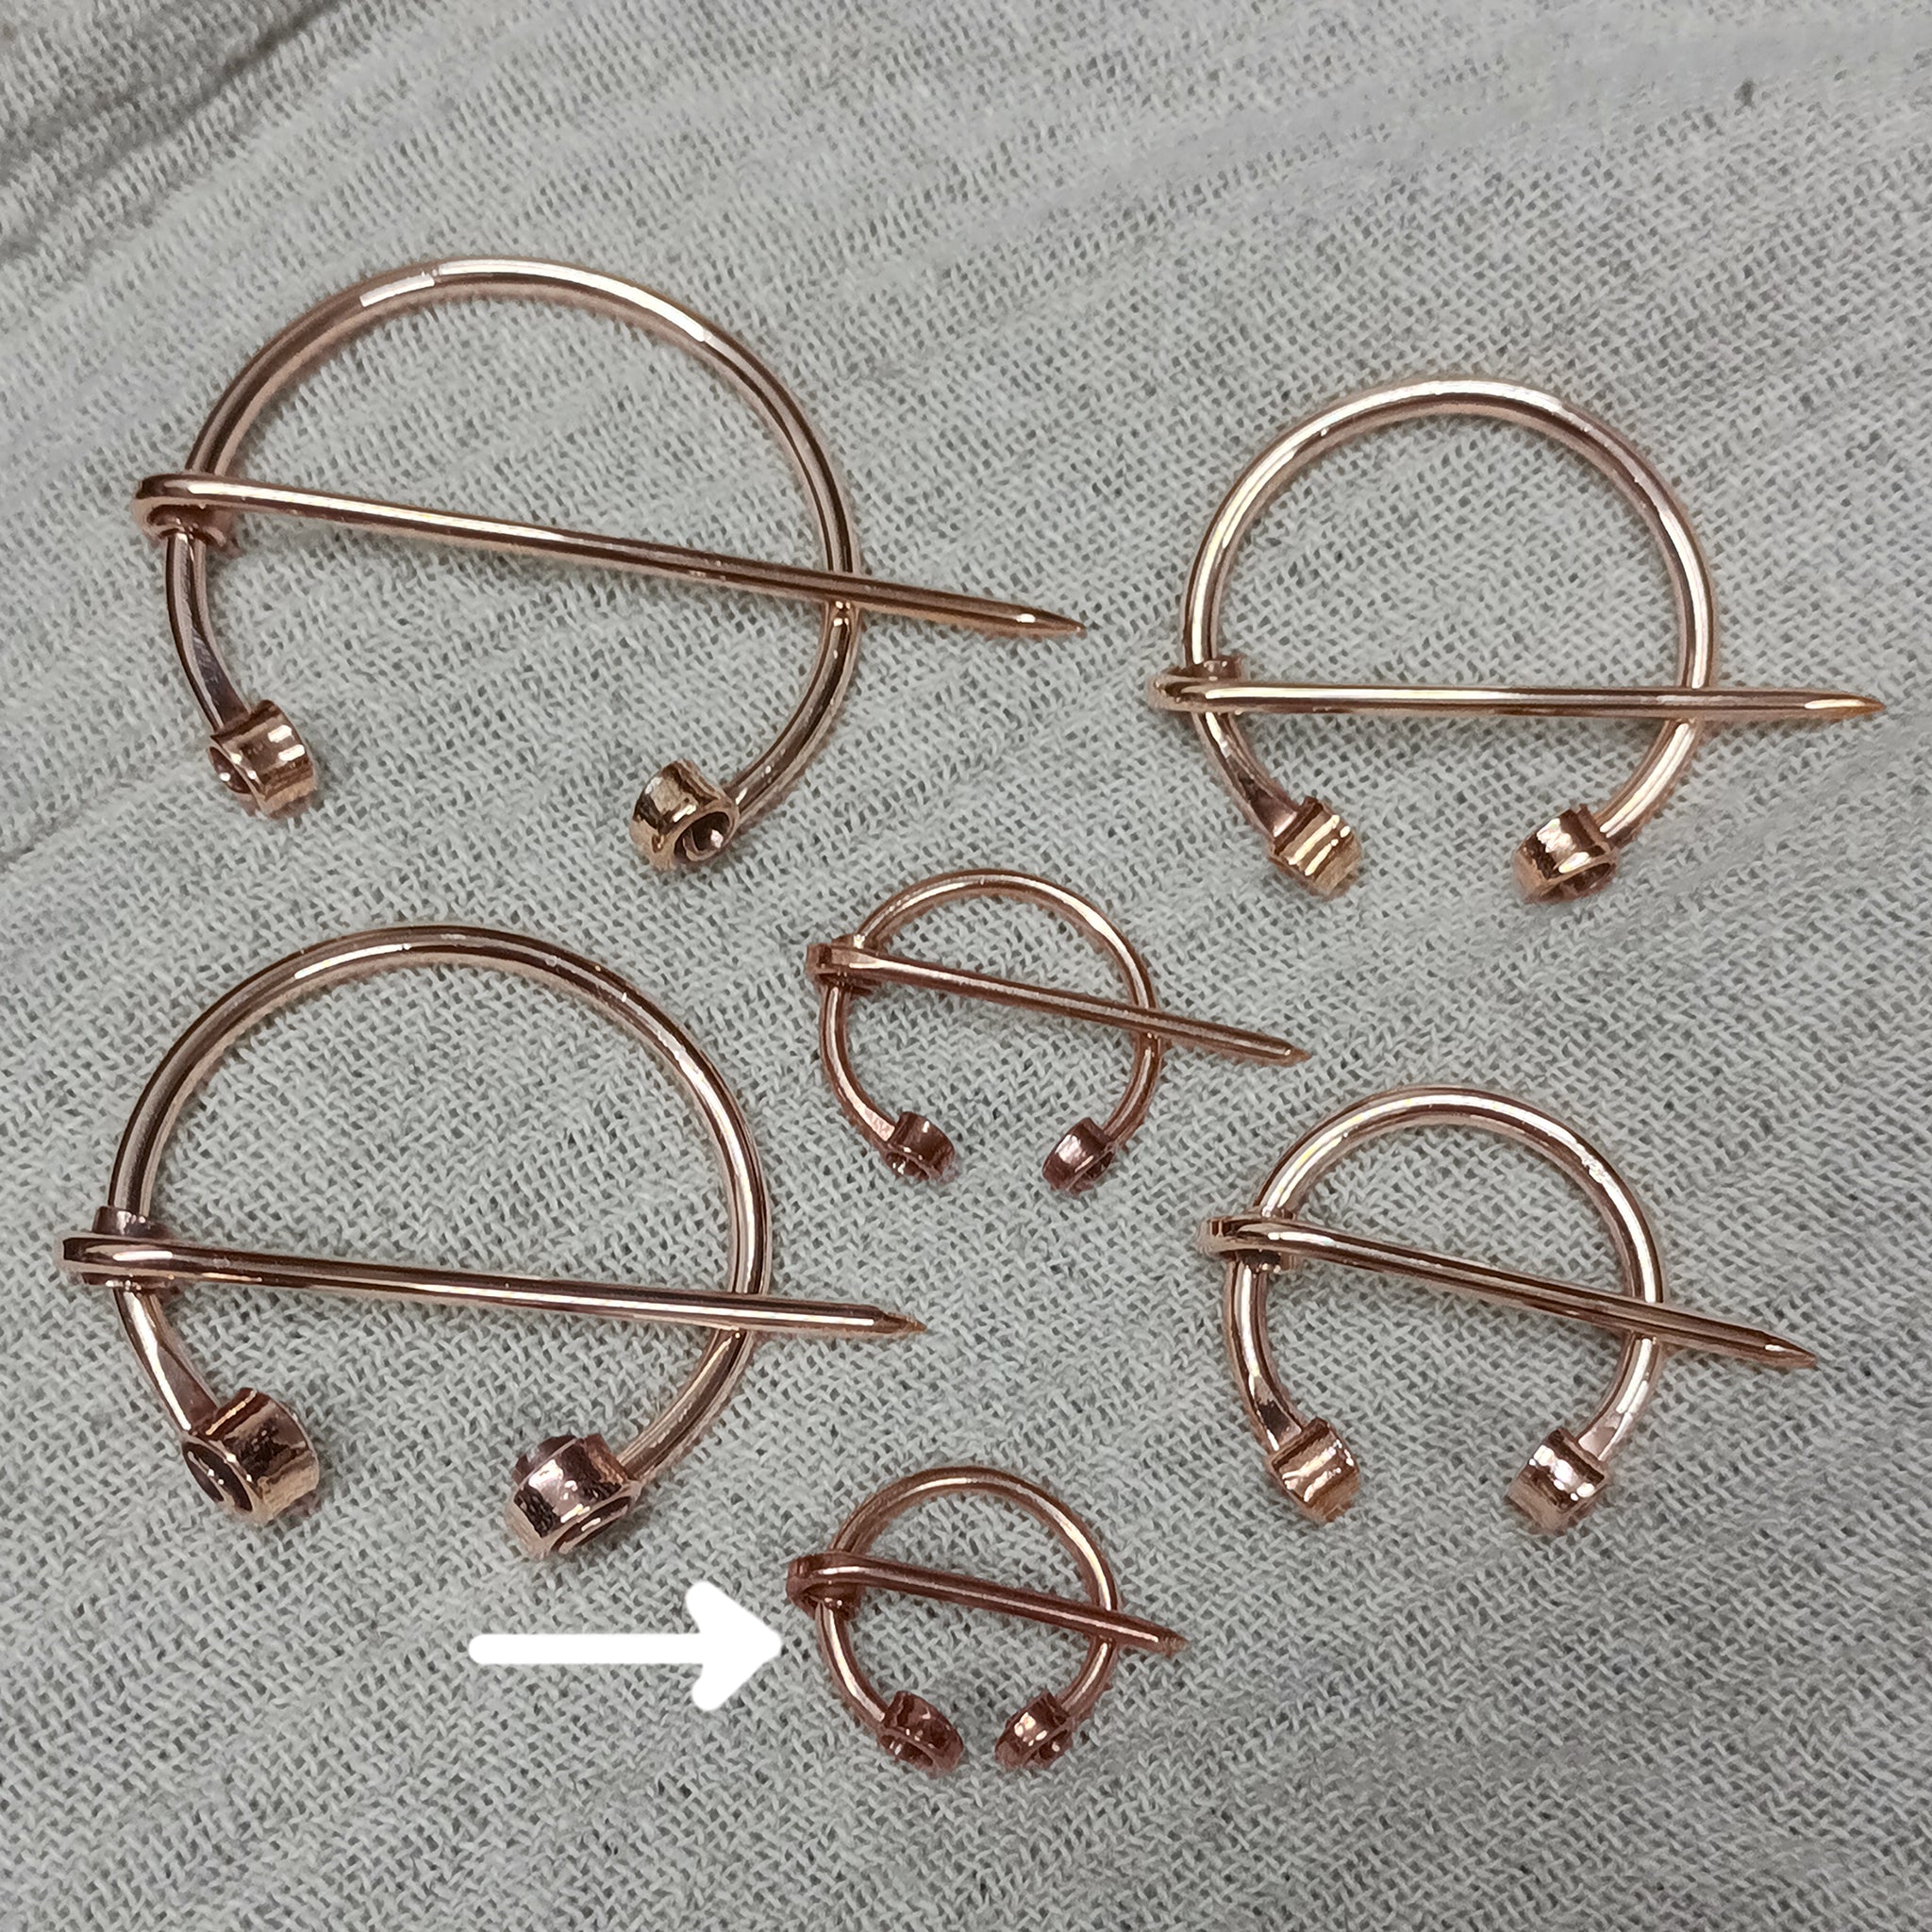 Bronze Clothes Pin / Cloak Pin / Fibula - 20mm Diameter